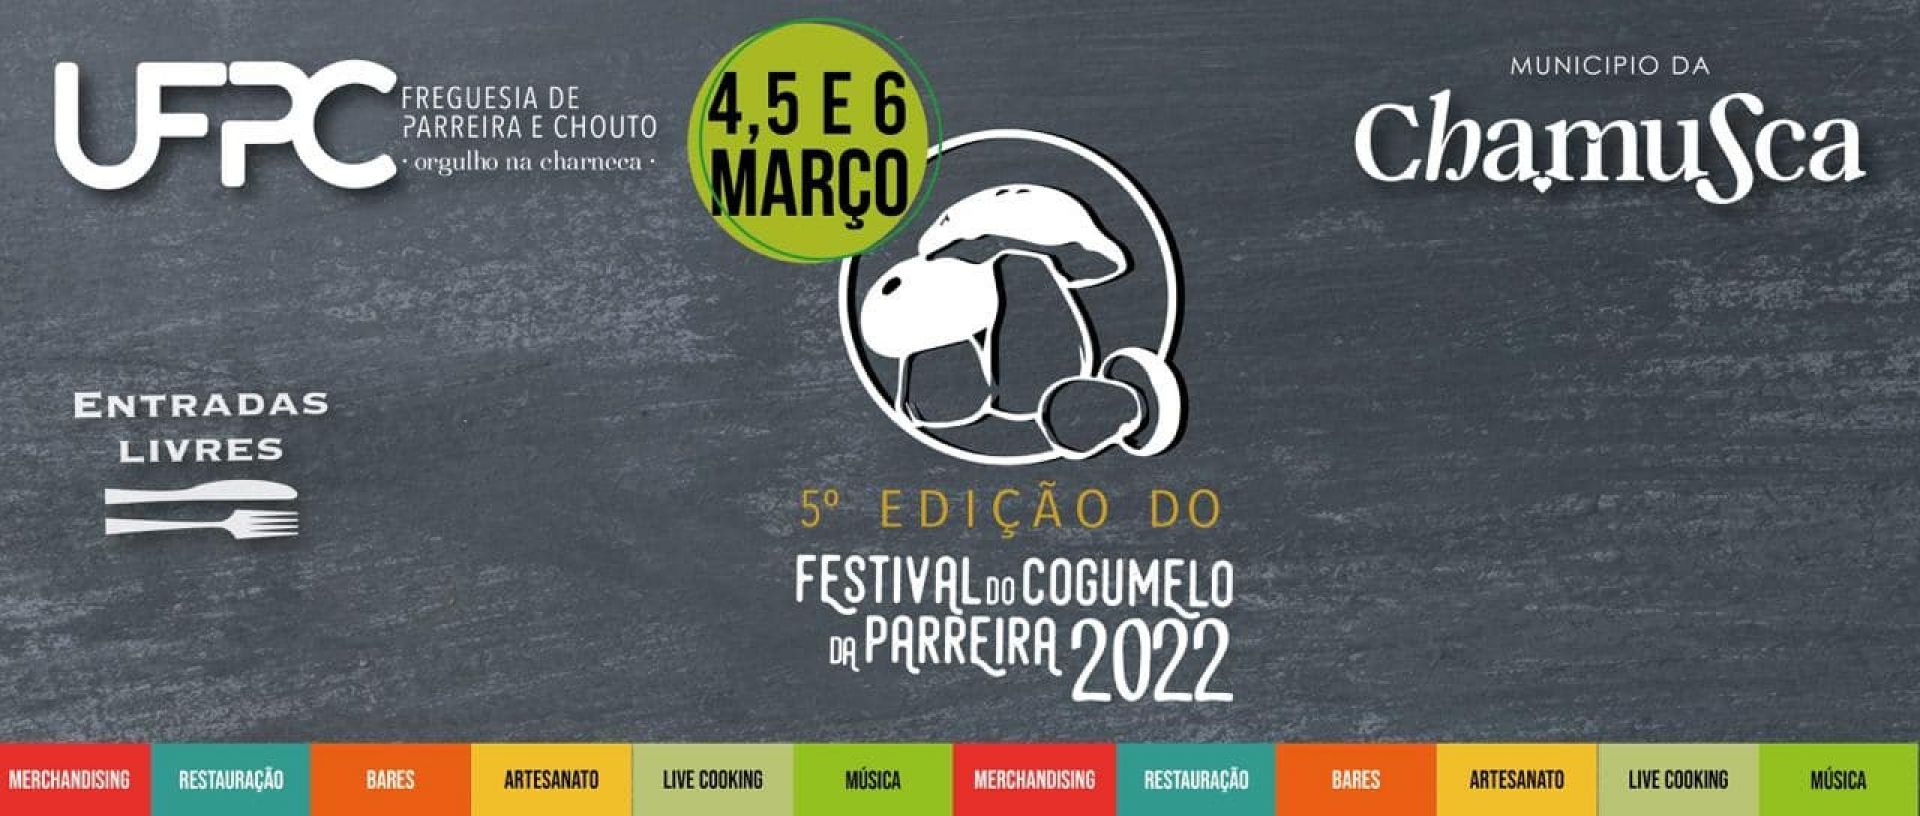 Festival do Cogumelo da Parreira 2022